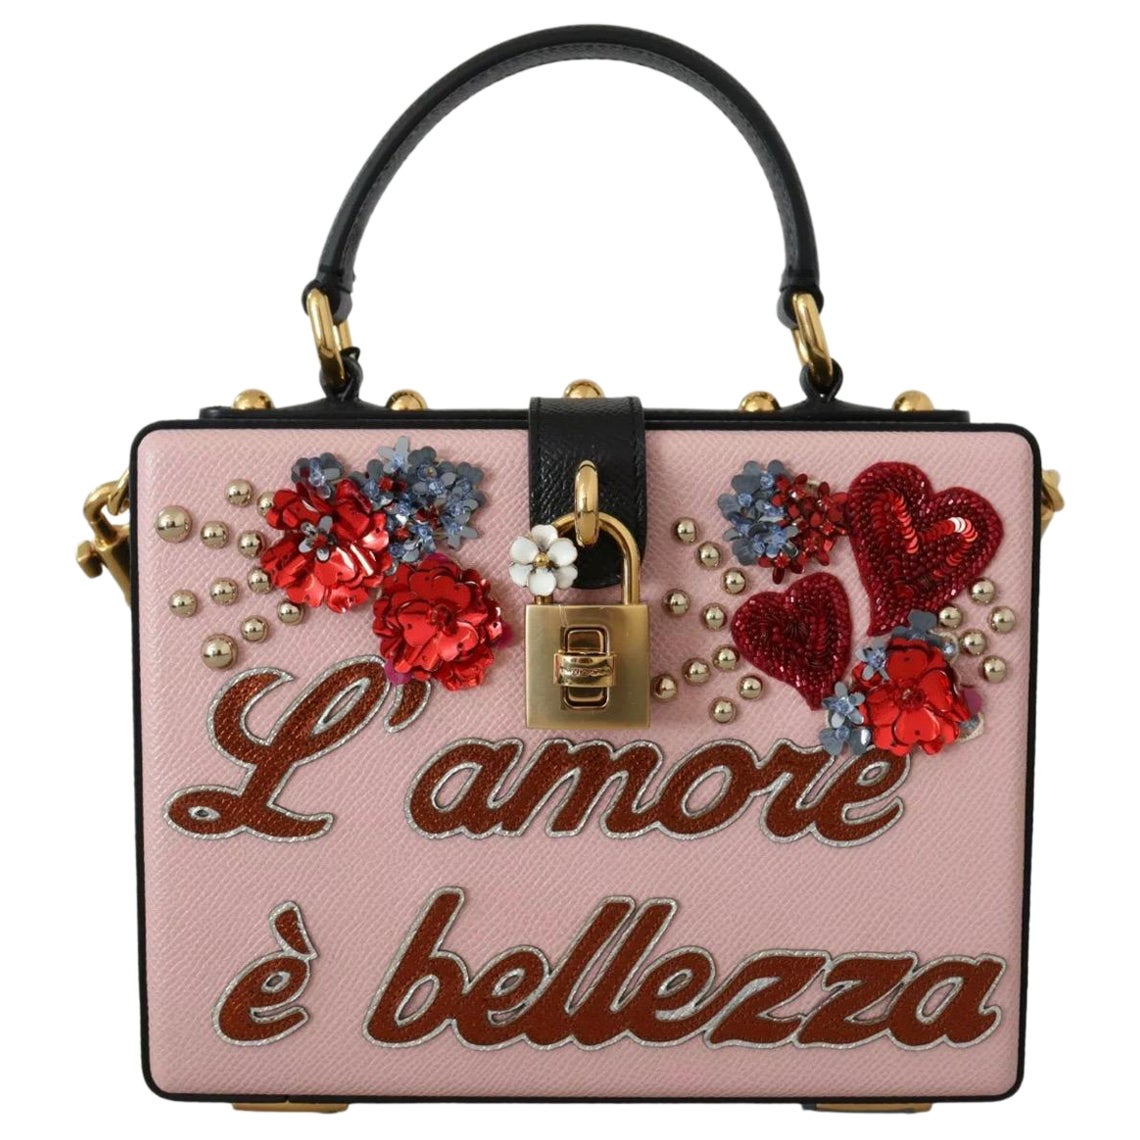 Dolce Gabbana Box Bag - 41 For Sale on 1stDibs | dolce and gabbana 